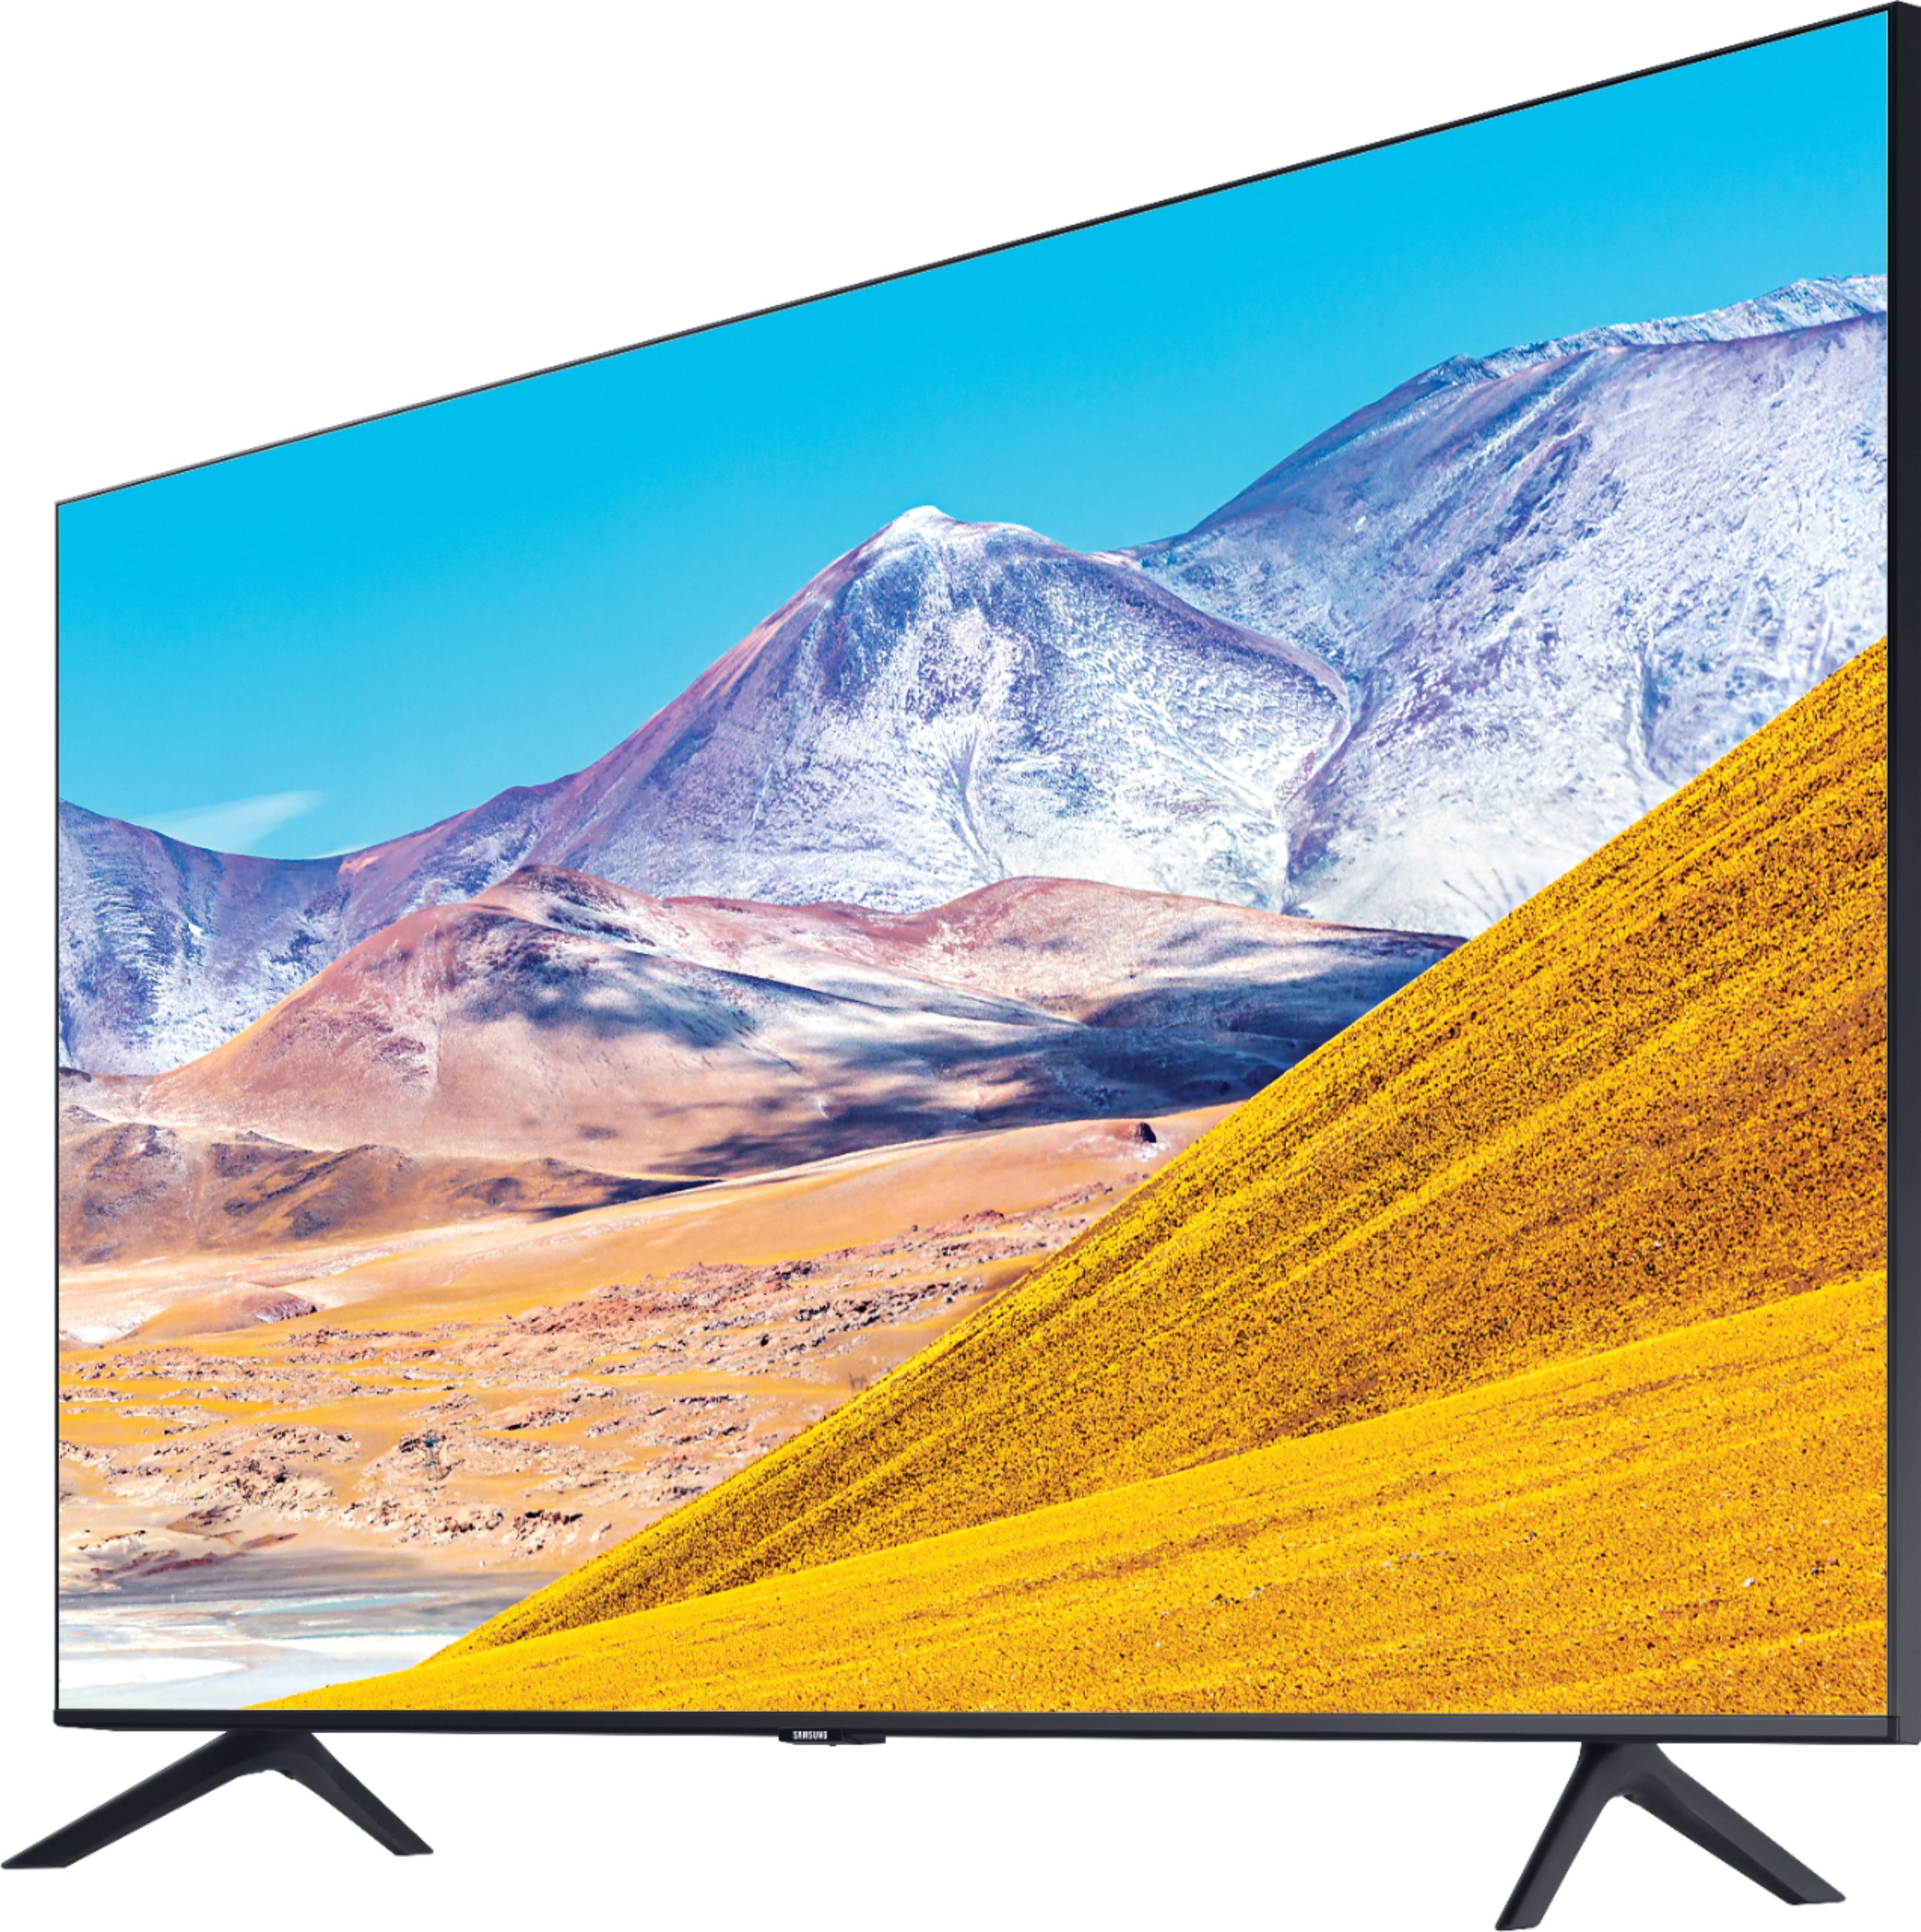 Left View: Samsung - 65" Class 8 Series LED 4K UHD Smart Tizen TV